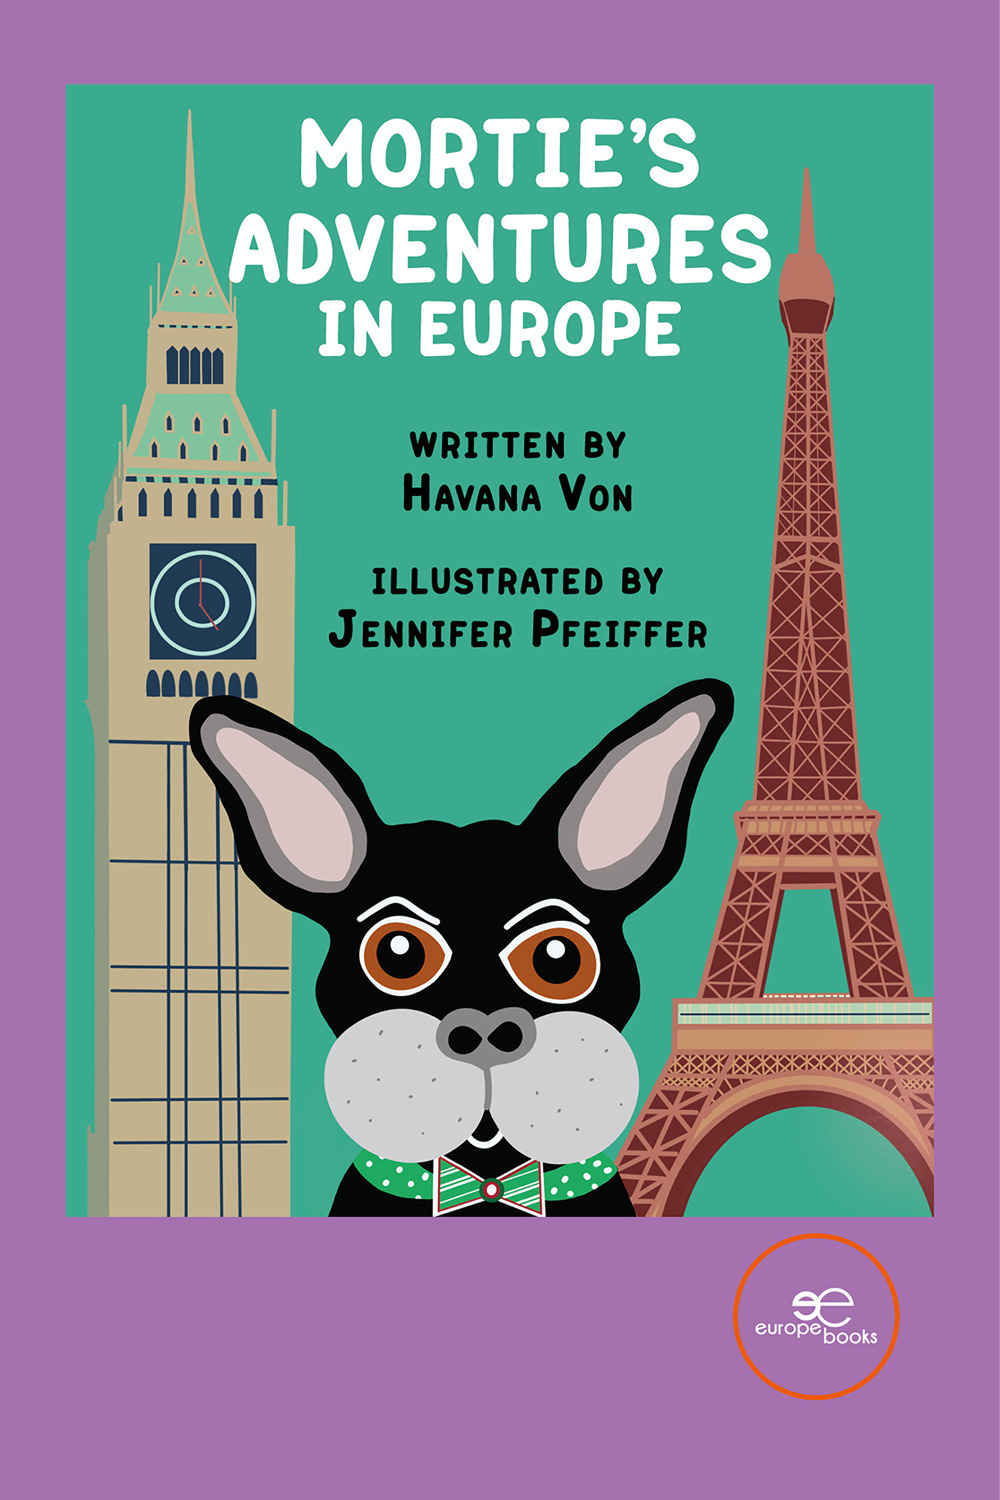 Mortie's adventures in Europe